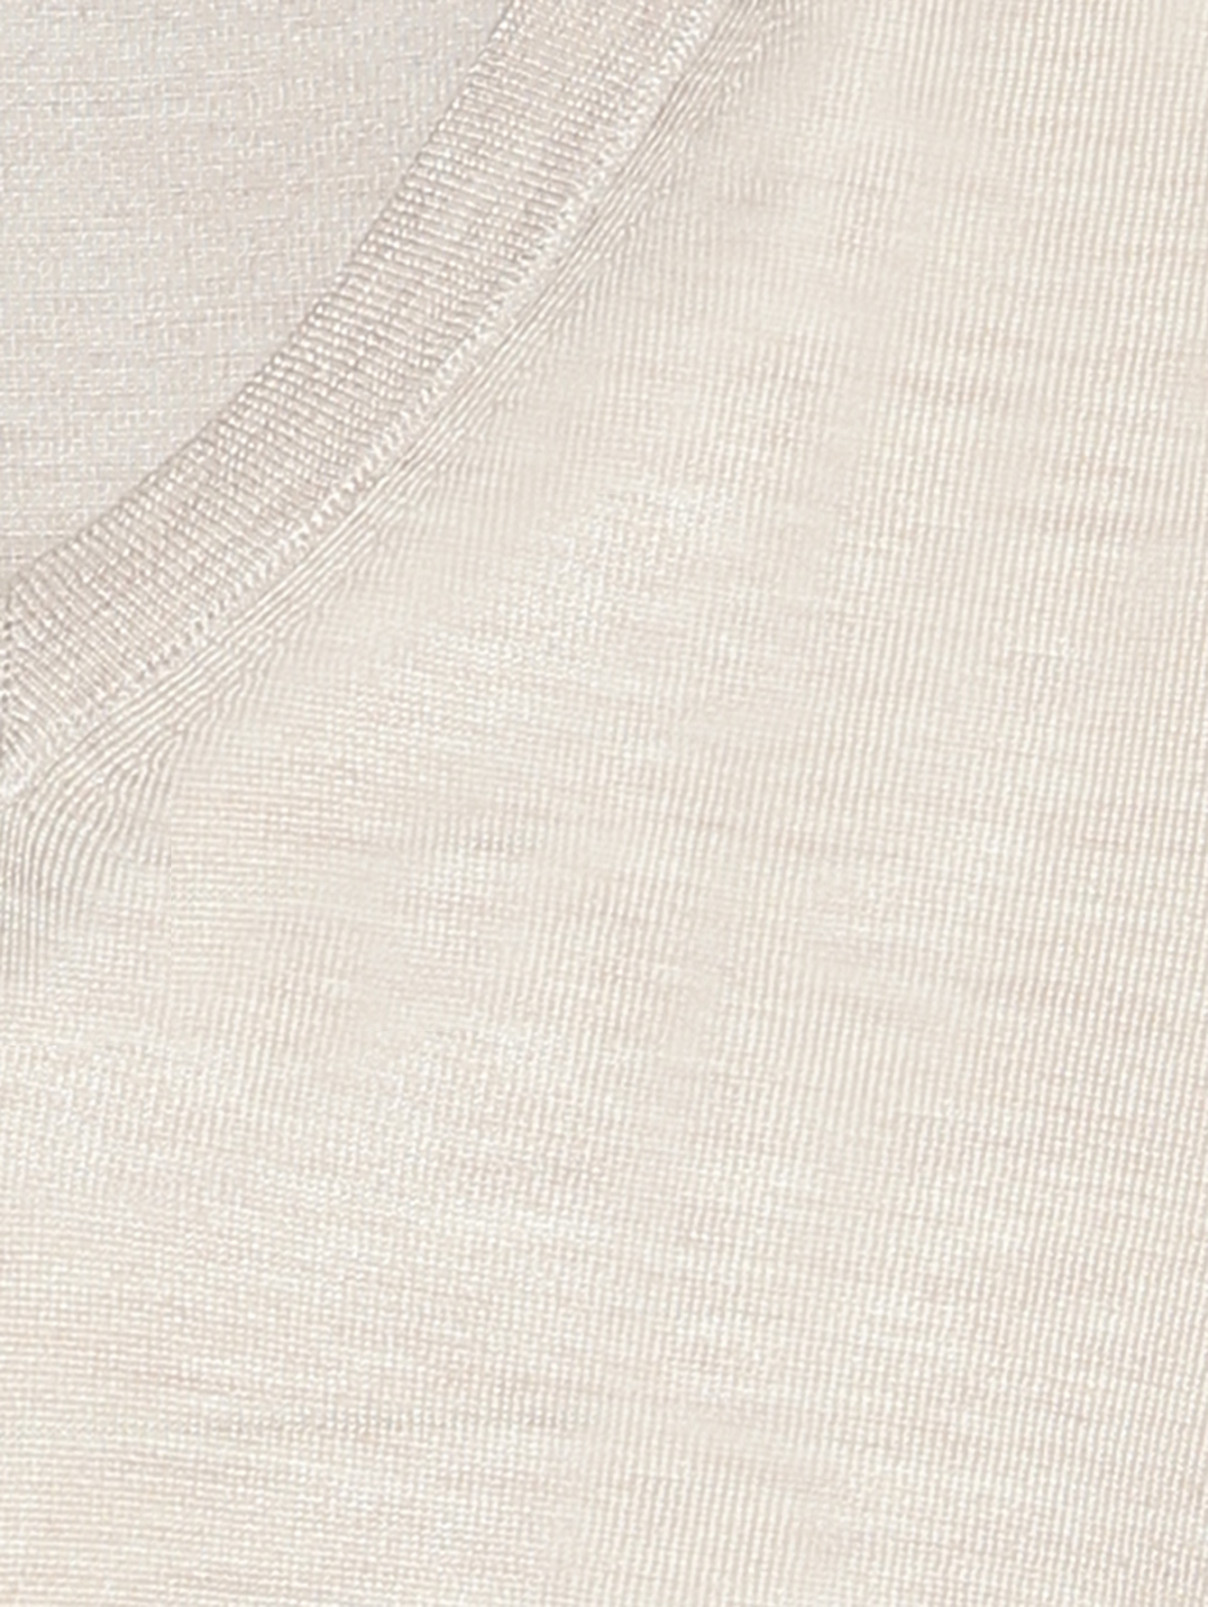 Джемпер из шерсти и шелка с V-образным вырезом Piacenza Cashmere  –  Деталь  – Цвет:  Бежевый